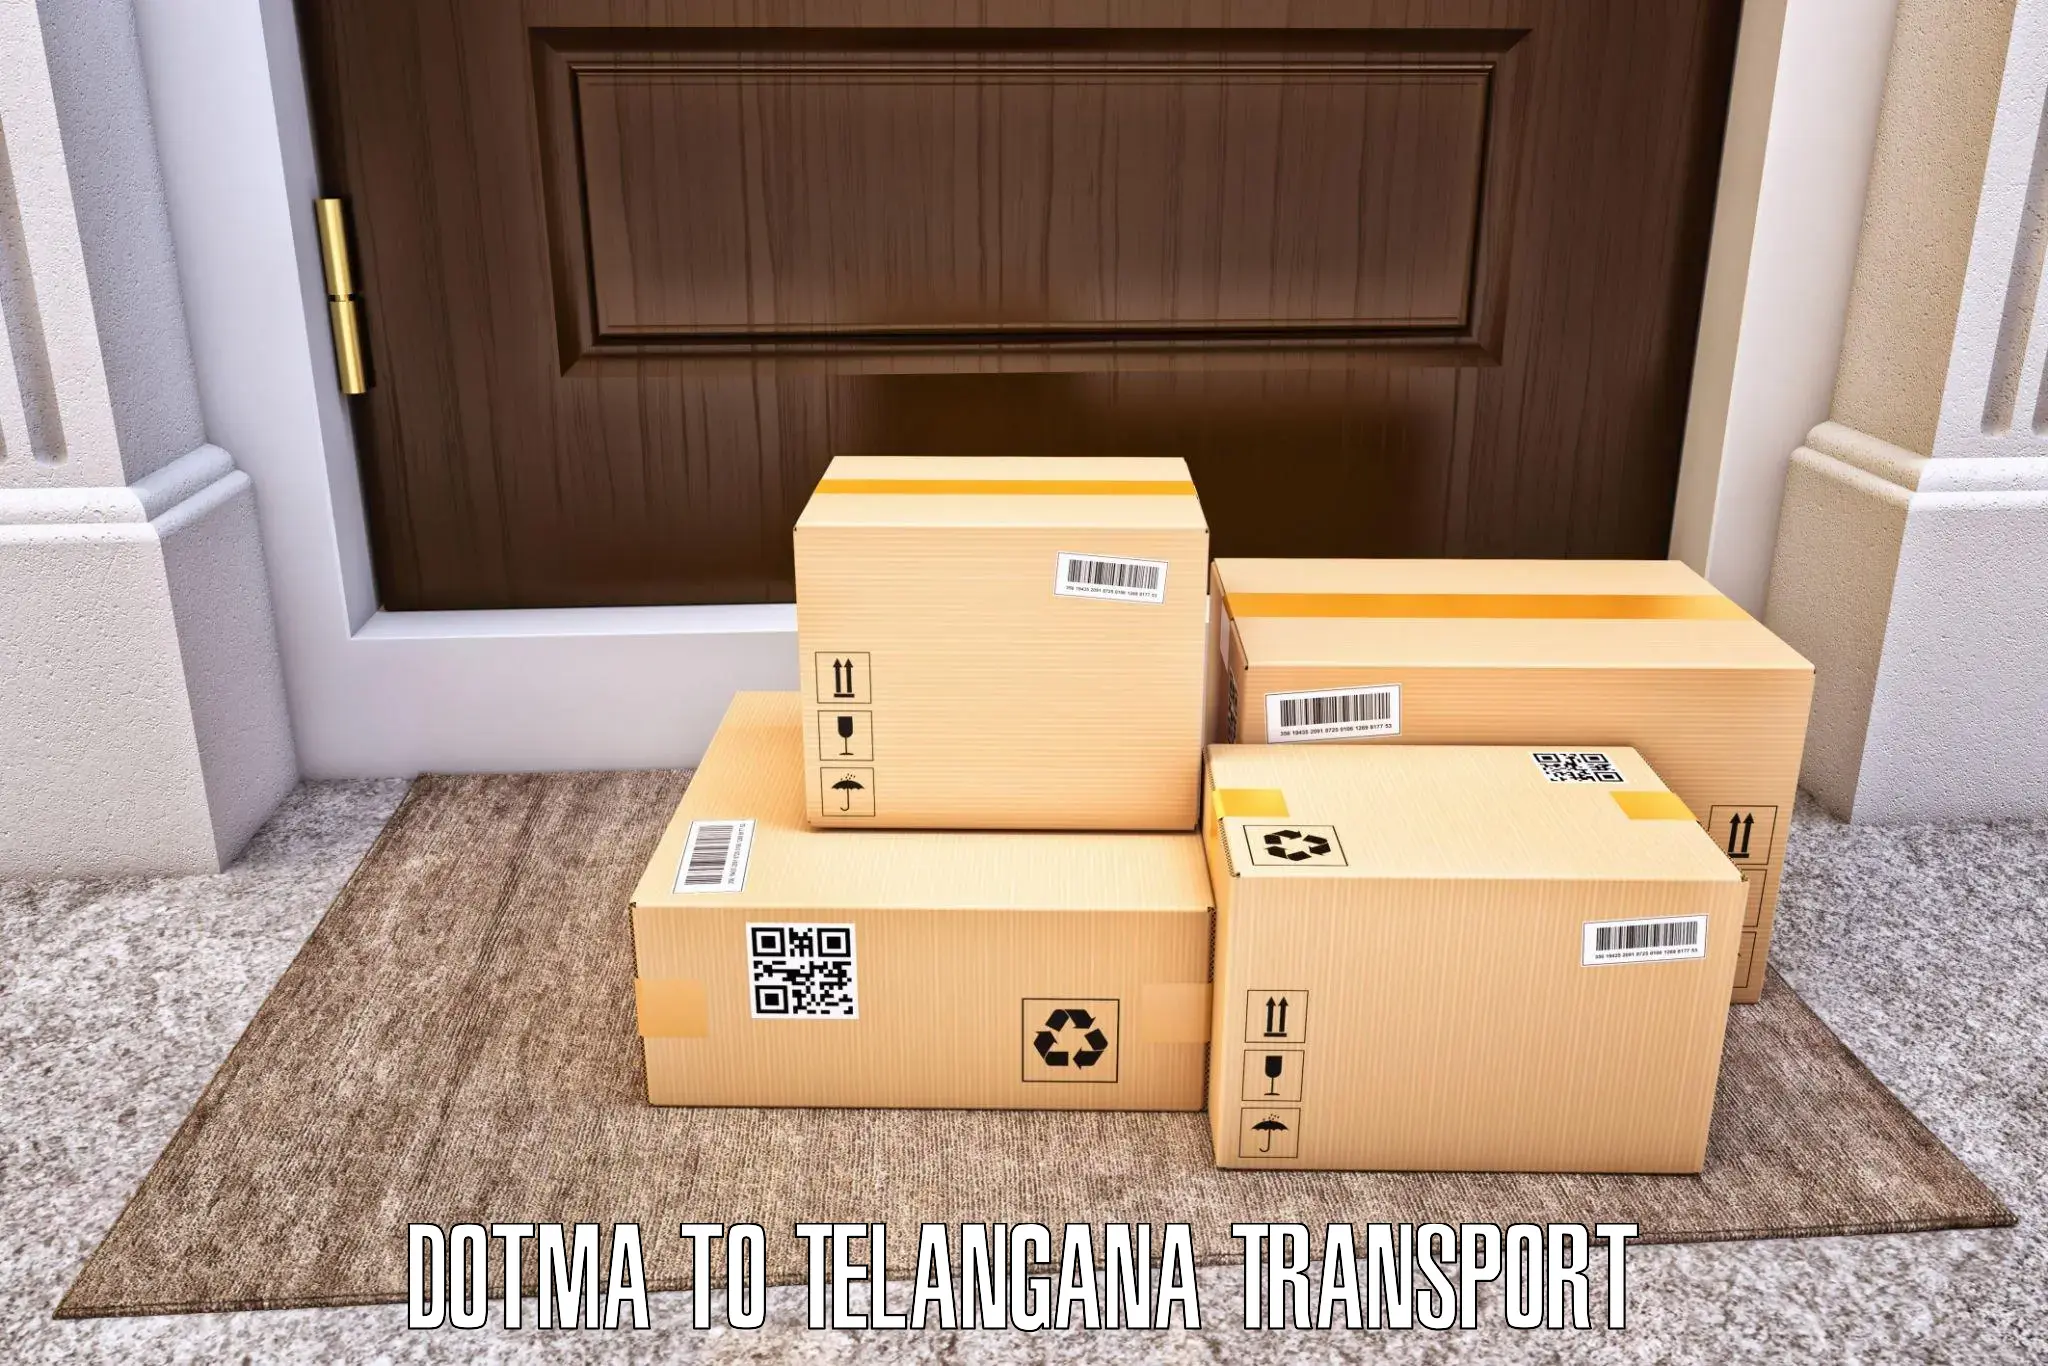 Interstate transport services Dotma to Manuguru